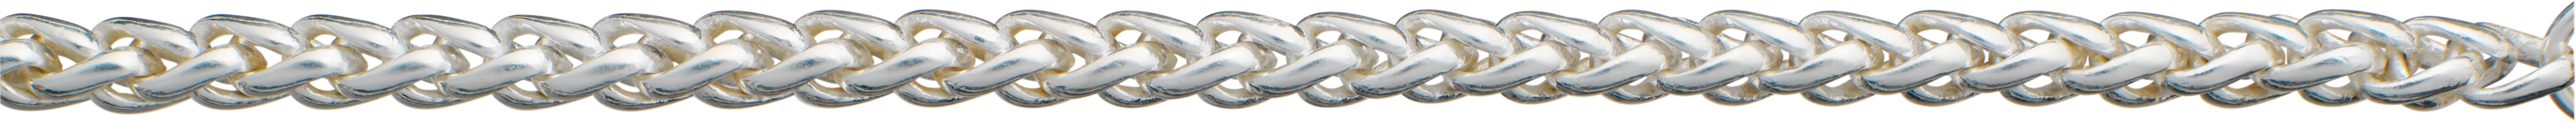 Braid chain silver 925/- Ø 3,90mm